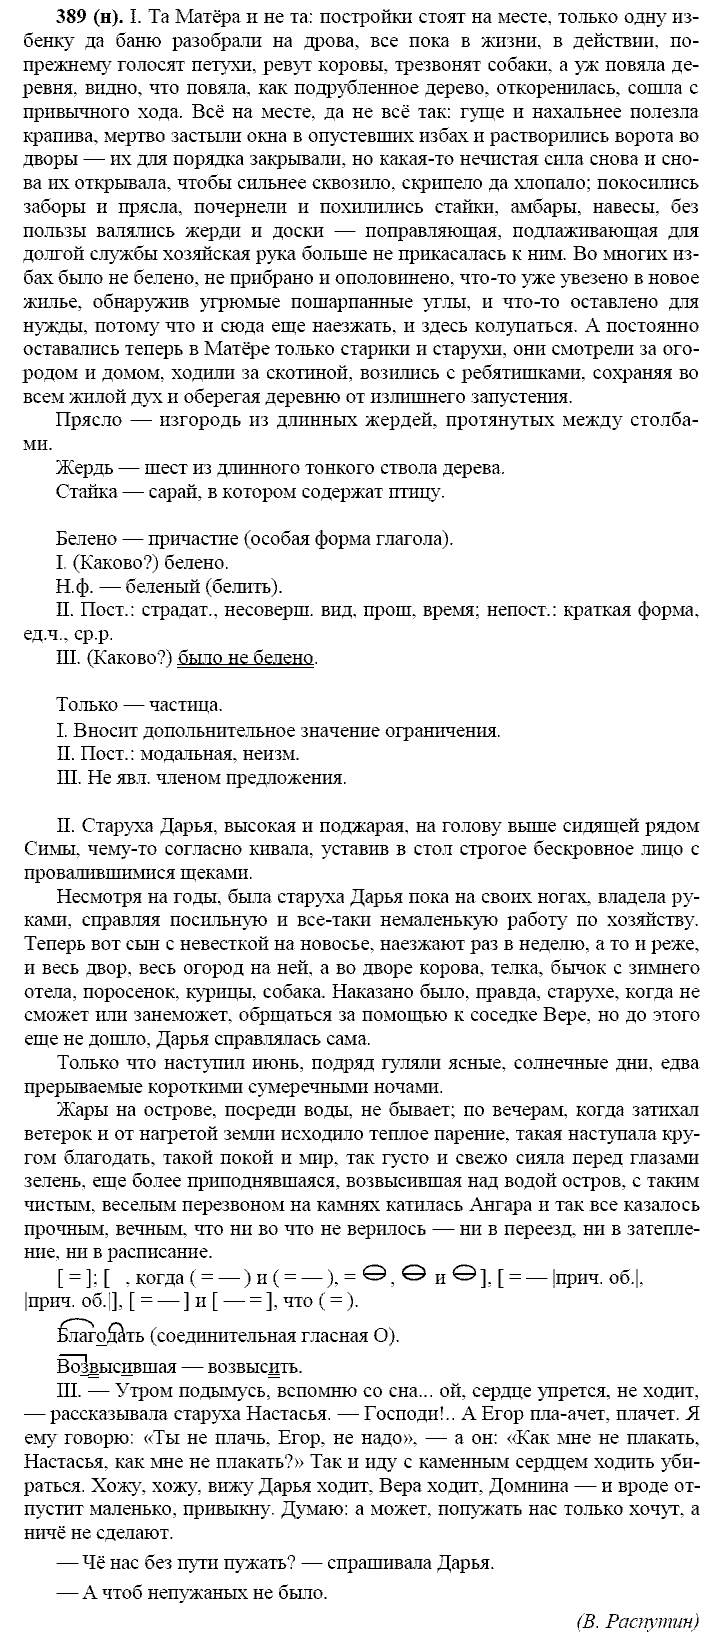 Русский язык, 11 класс, Власенков, Рыбченков, 2009-2014, задание: 389 (н)